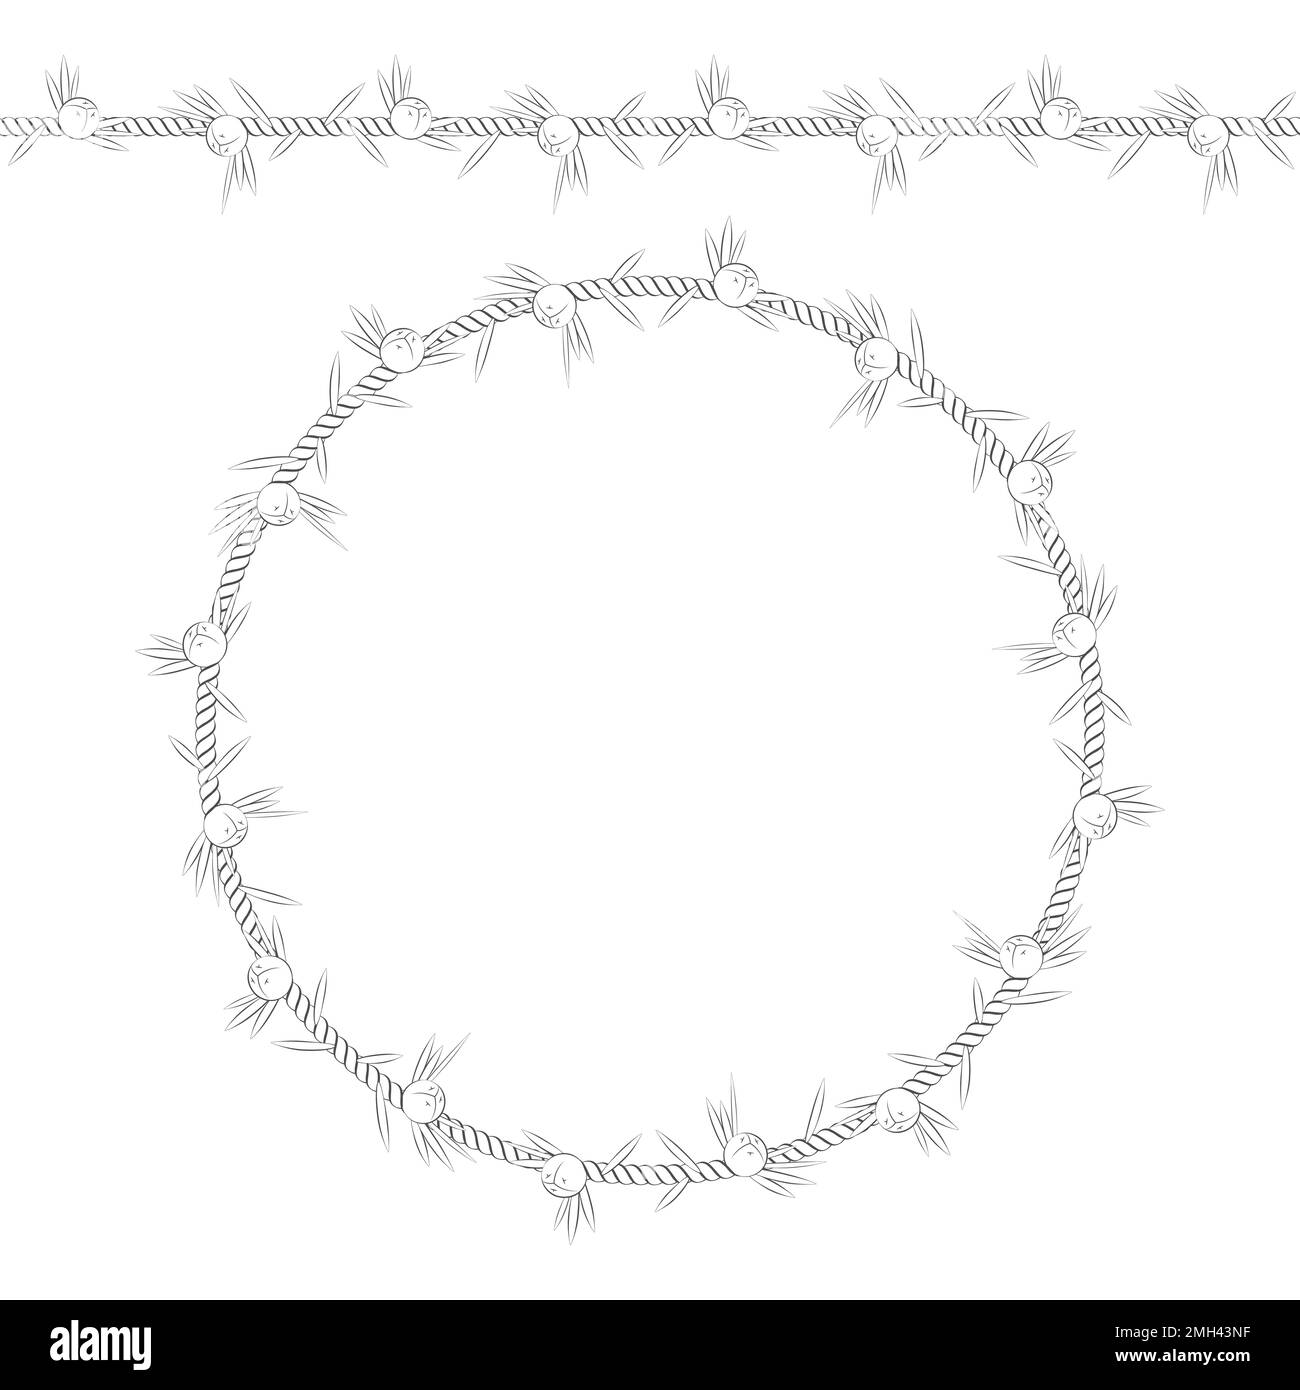 Nahtloses Muster und Rahmen der Kordel mit Wacholder. Isolierte Objekte auf Weiß. Stock Vektor